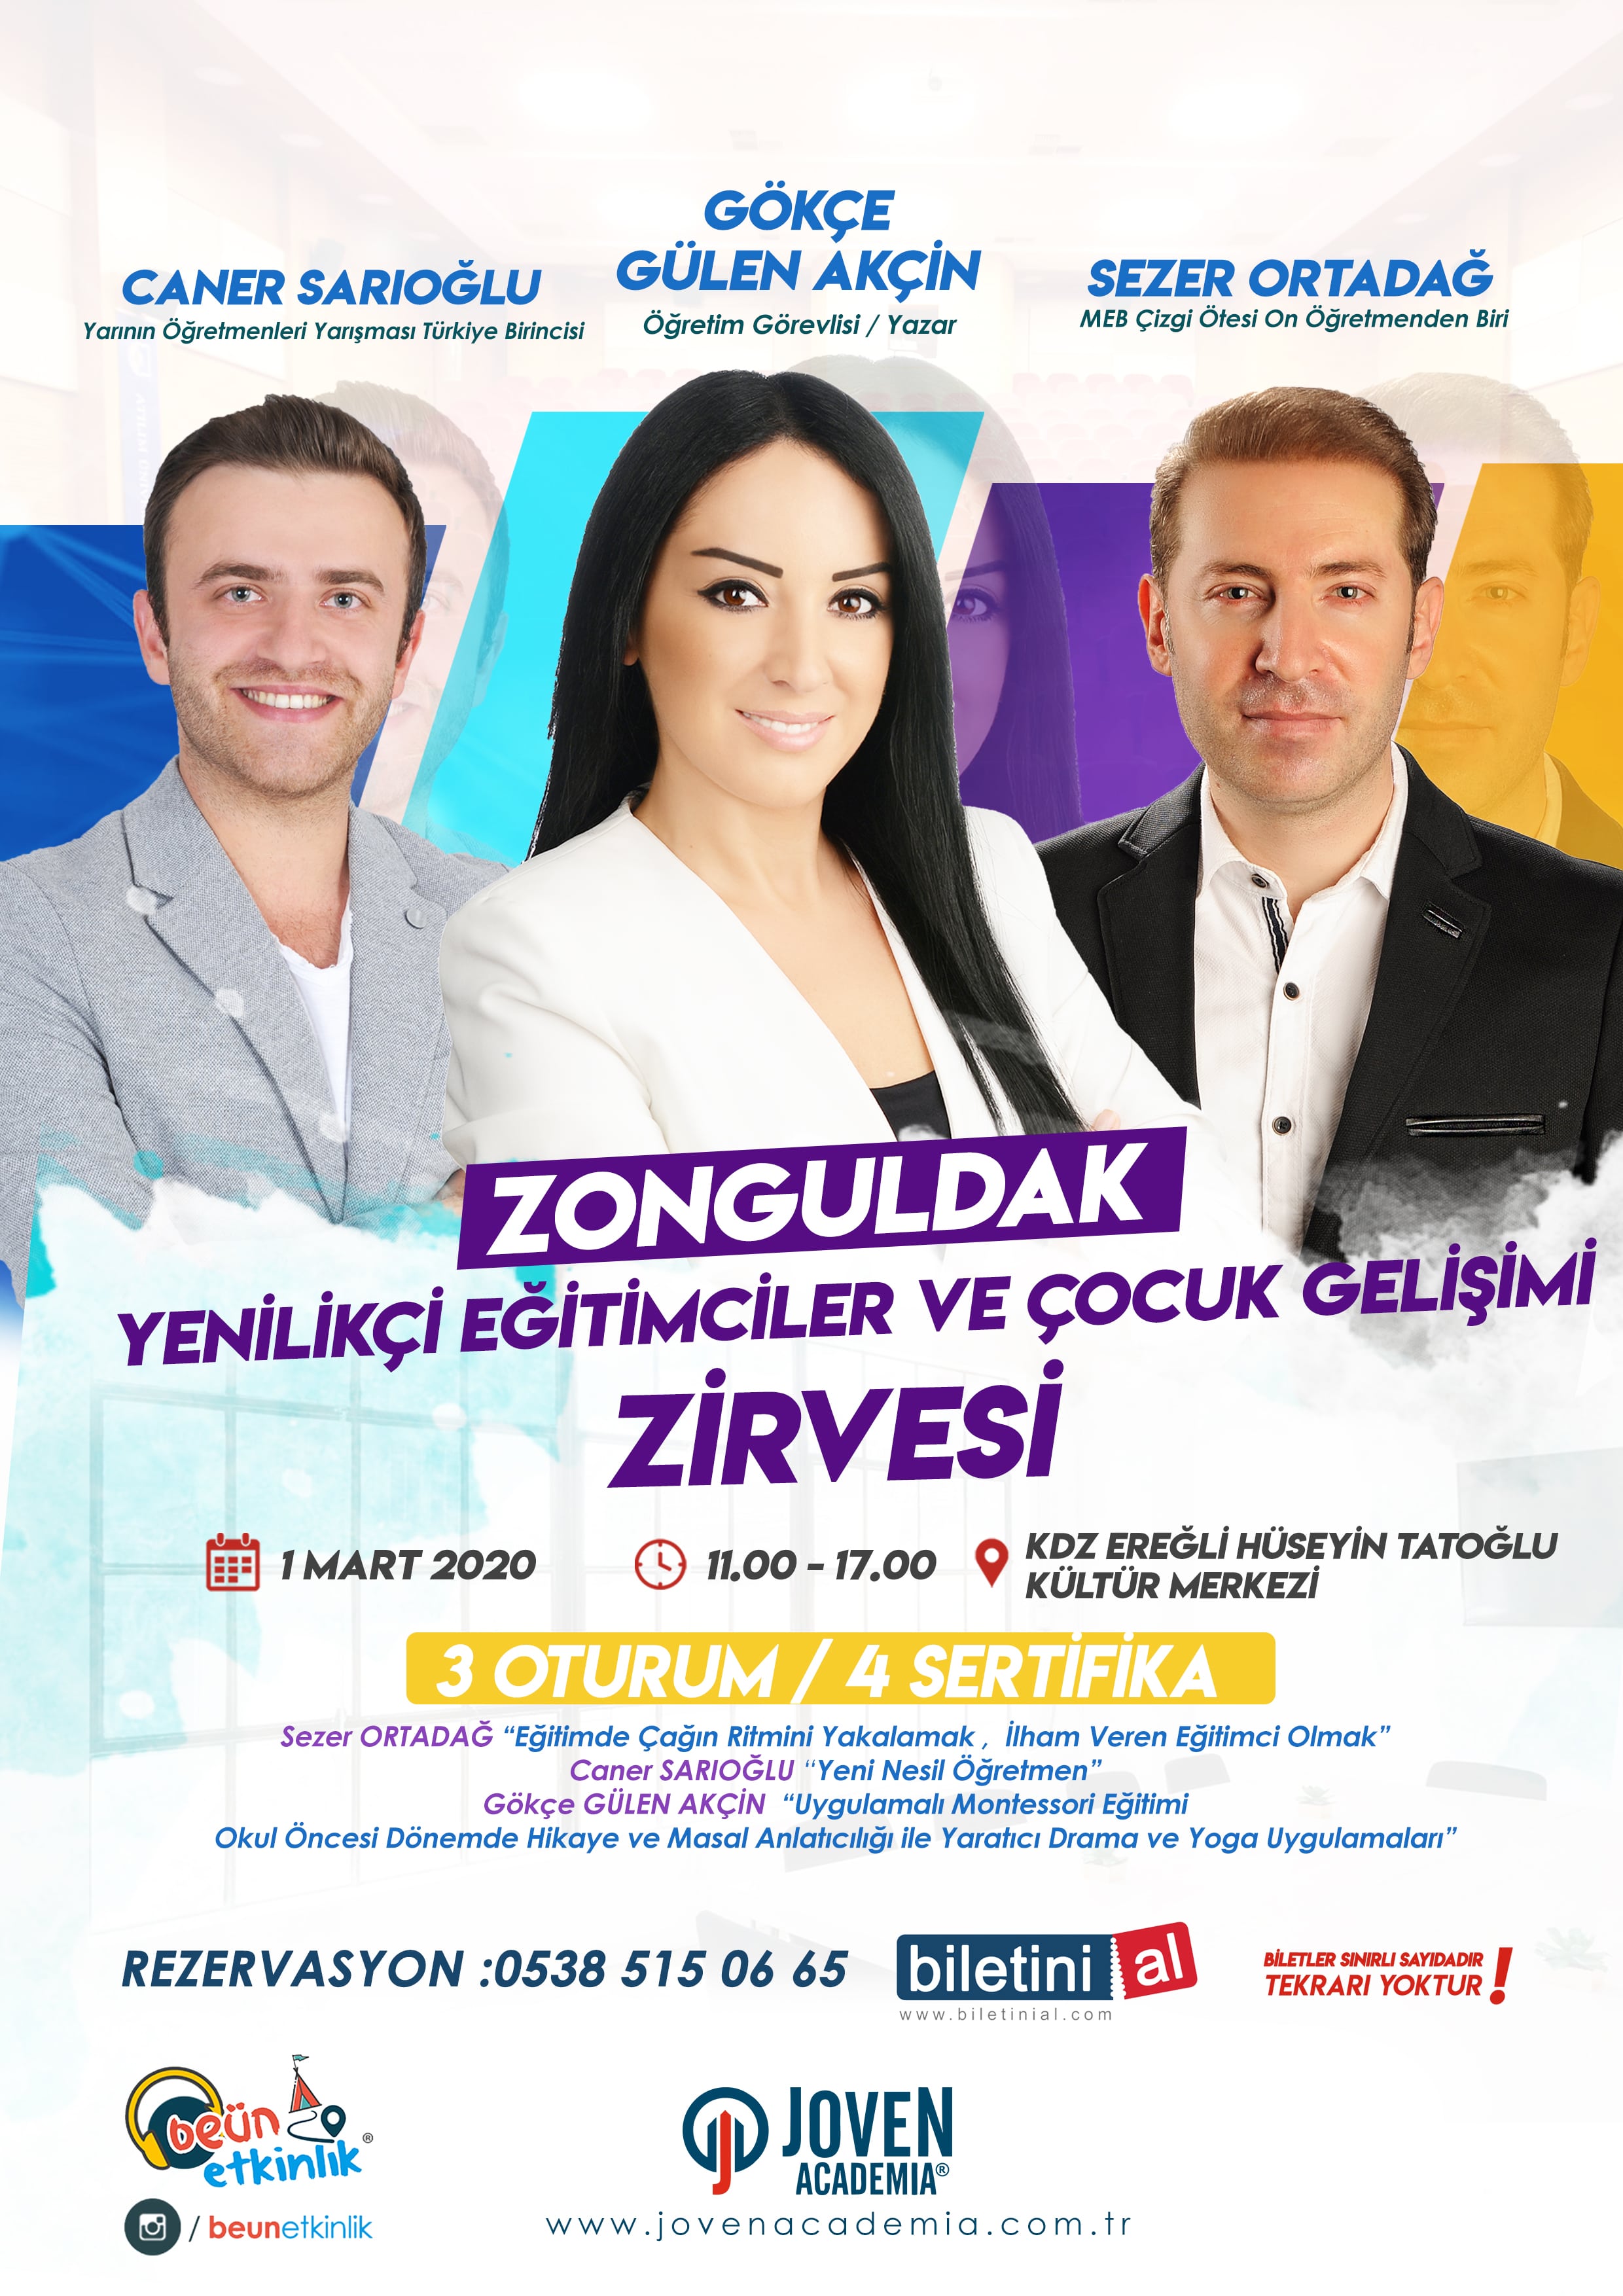 Zonguldak Yenilikçi Eğitimciler ve Çocuk Gelişim Zirvesi